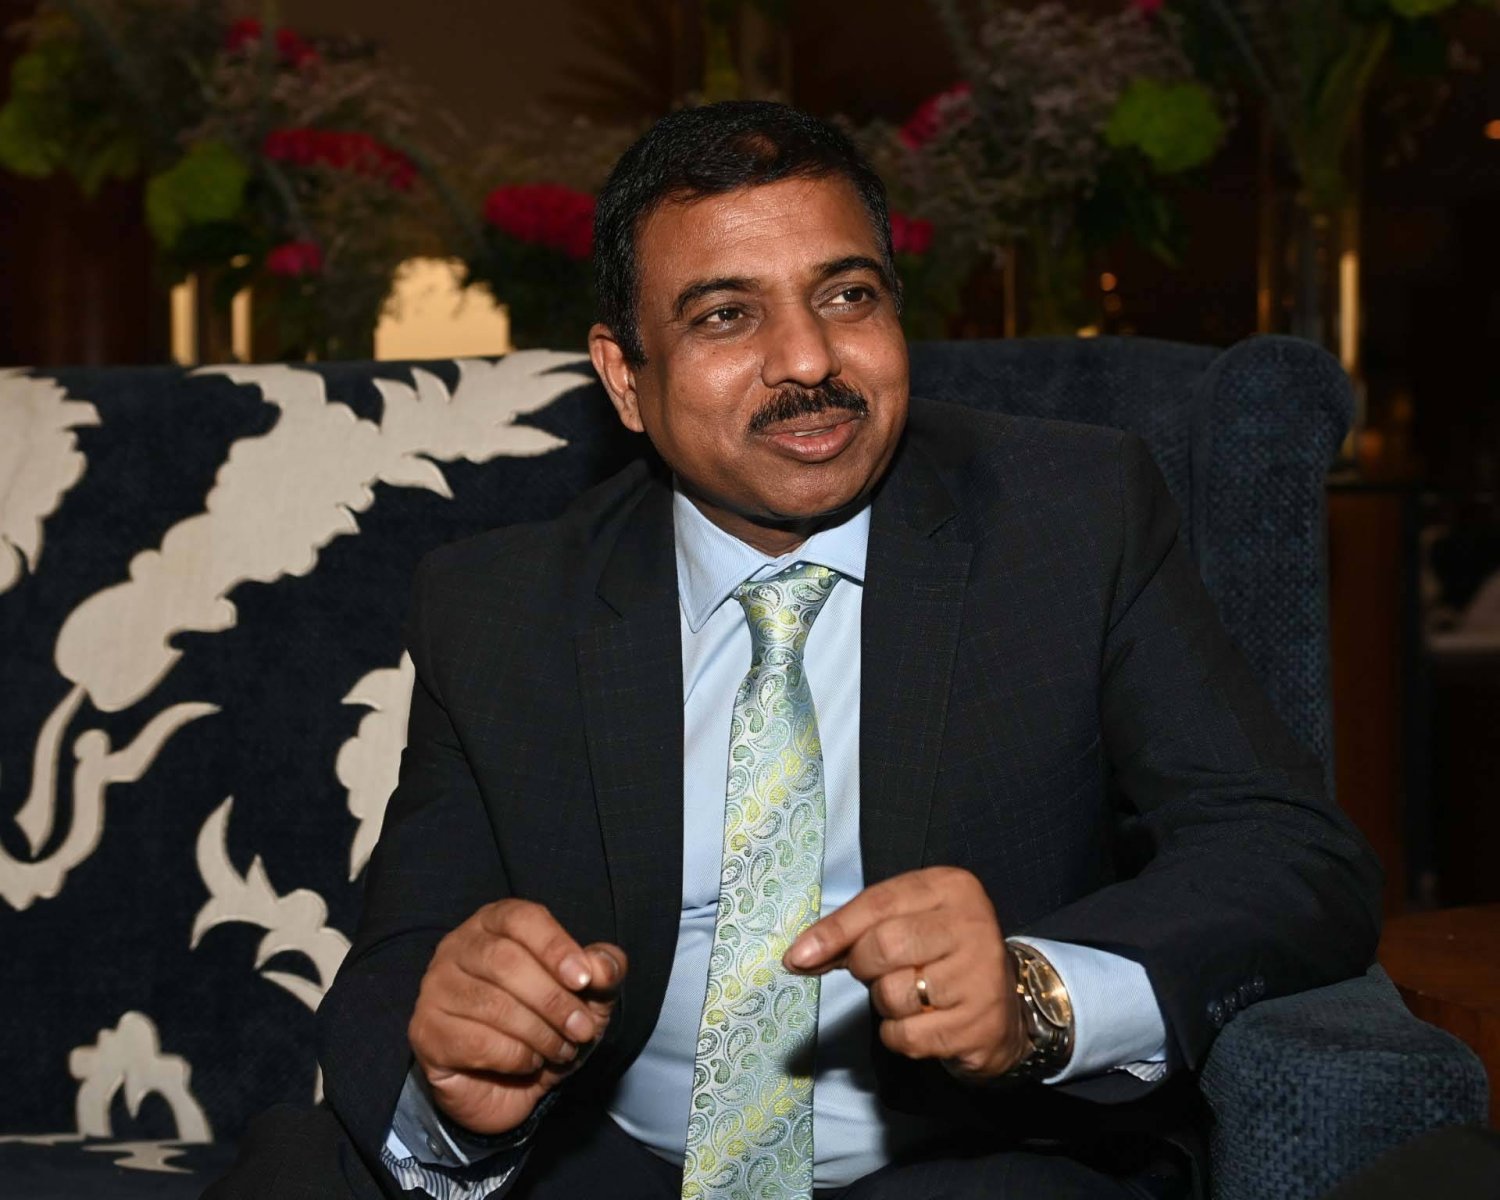 موكتيش بارديشي مساعد وزير الخارجية الهندي للشؤون الخارجية (تصوير: عبد الرحمن القحطاني)